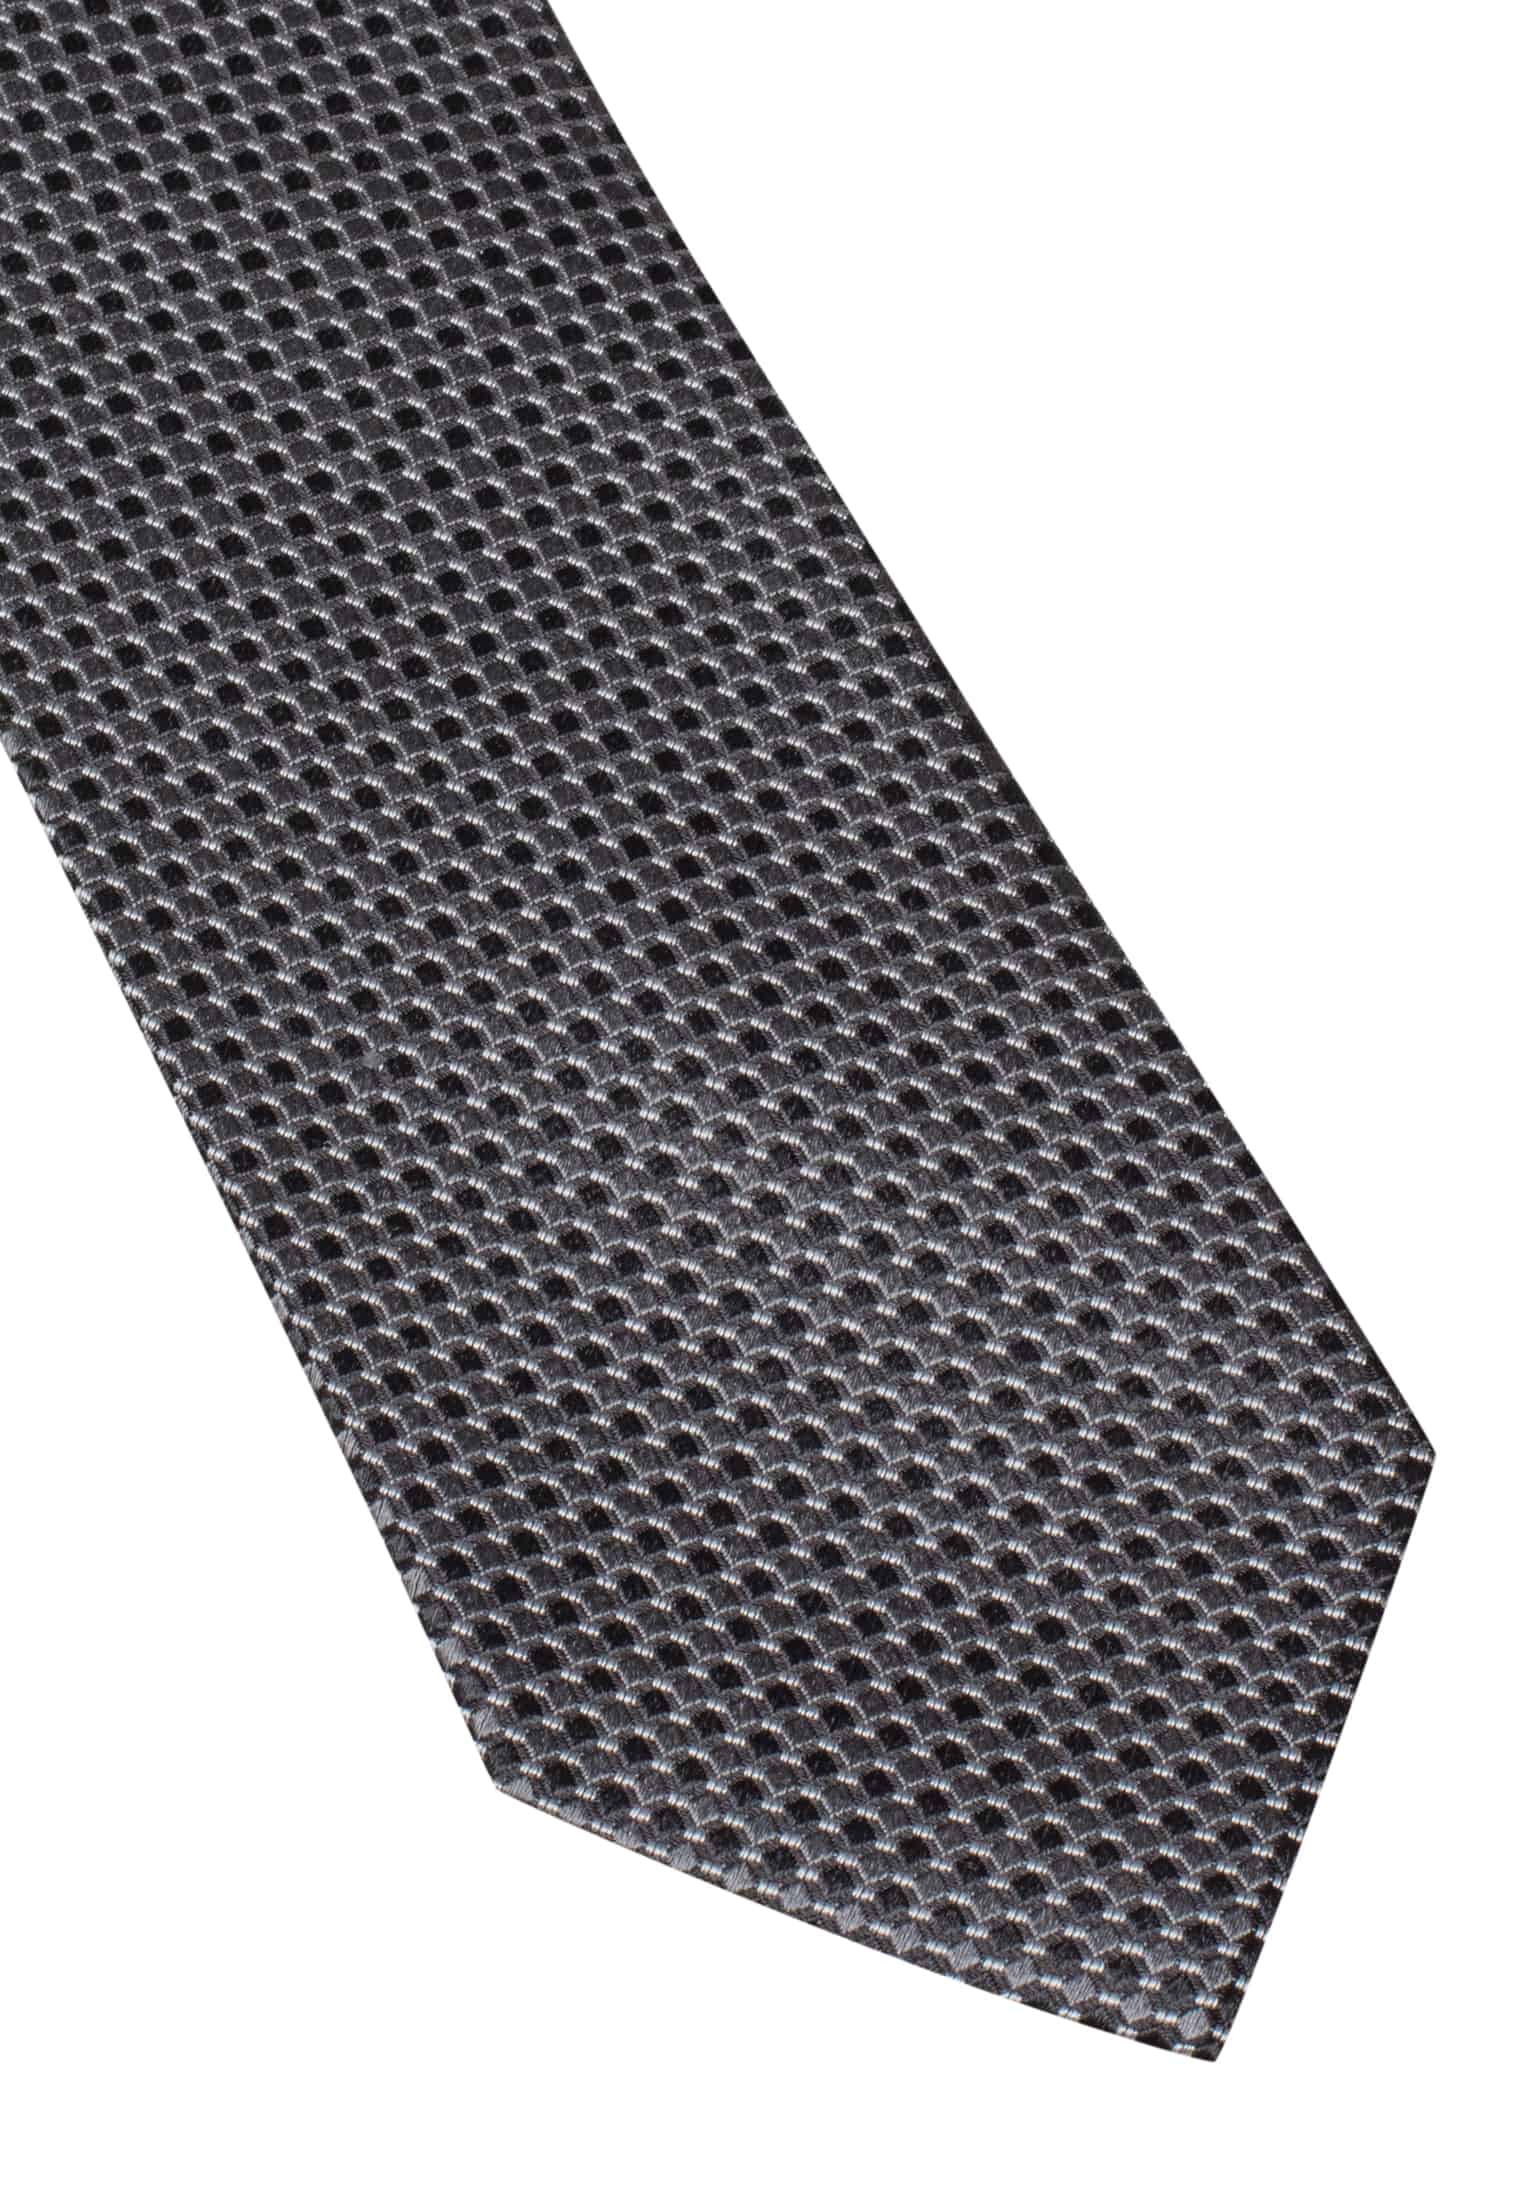 Cravate noir structuré